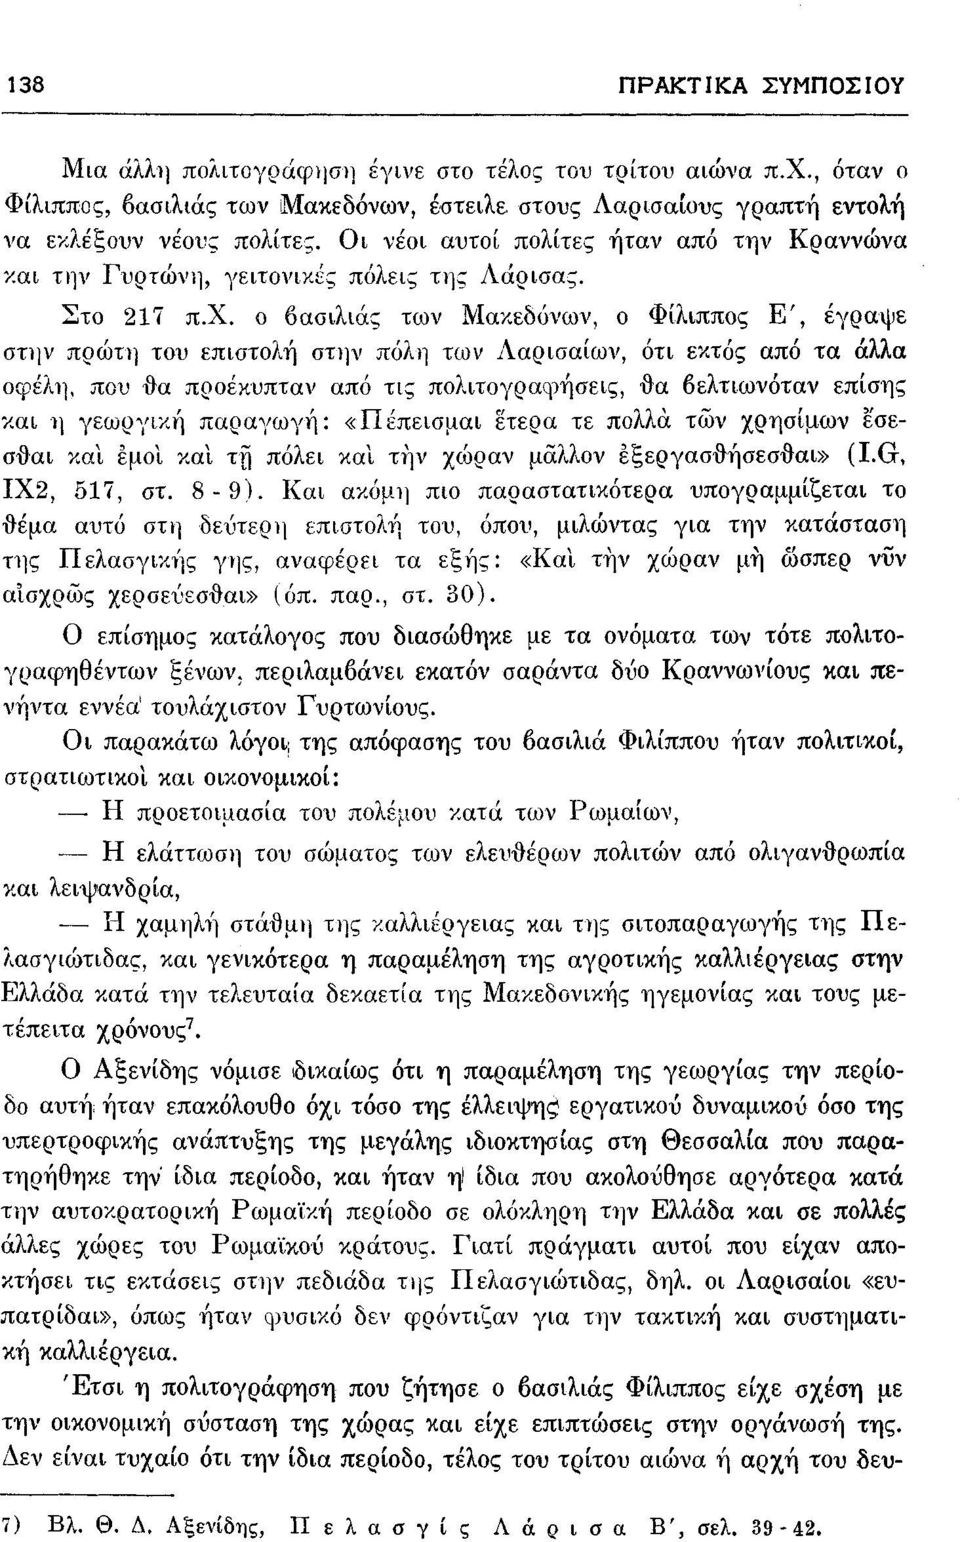 ο βασιλιάς των Μακεδόνων, ο Φίλιππος Ε', έγραψε στην πρώτη του επιστολή στην πόλη των Λαρισαίων, ότι εκτός από τα άλλα οφέλη, που θα προέκυπταν από τις πολιτογραη:>ήσεις, θα βελτιωνόταν επίσης και η